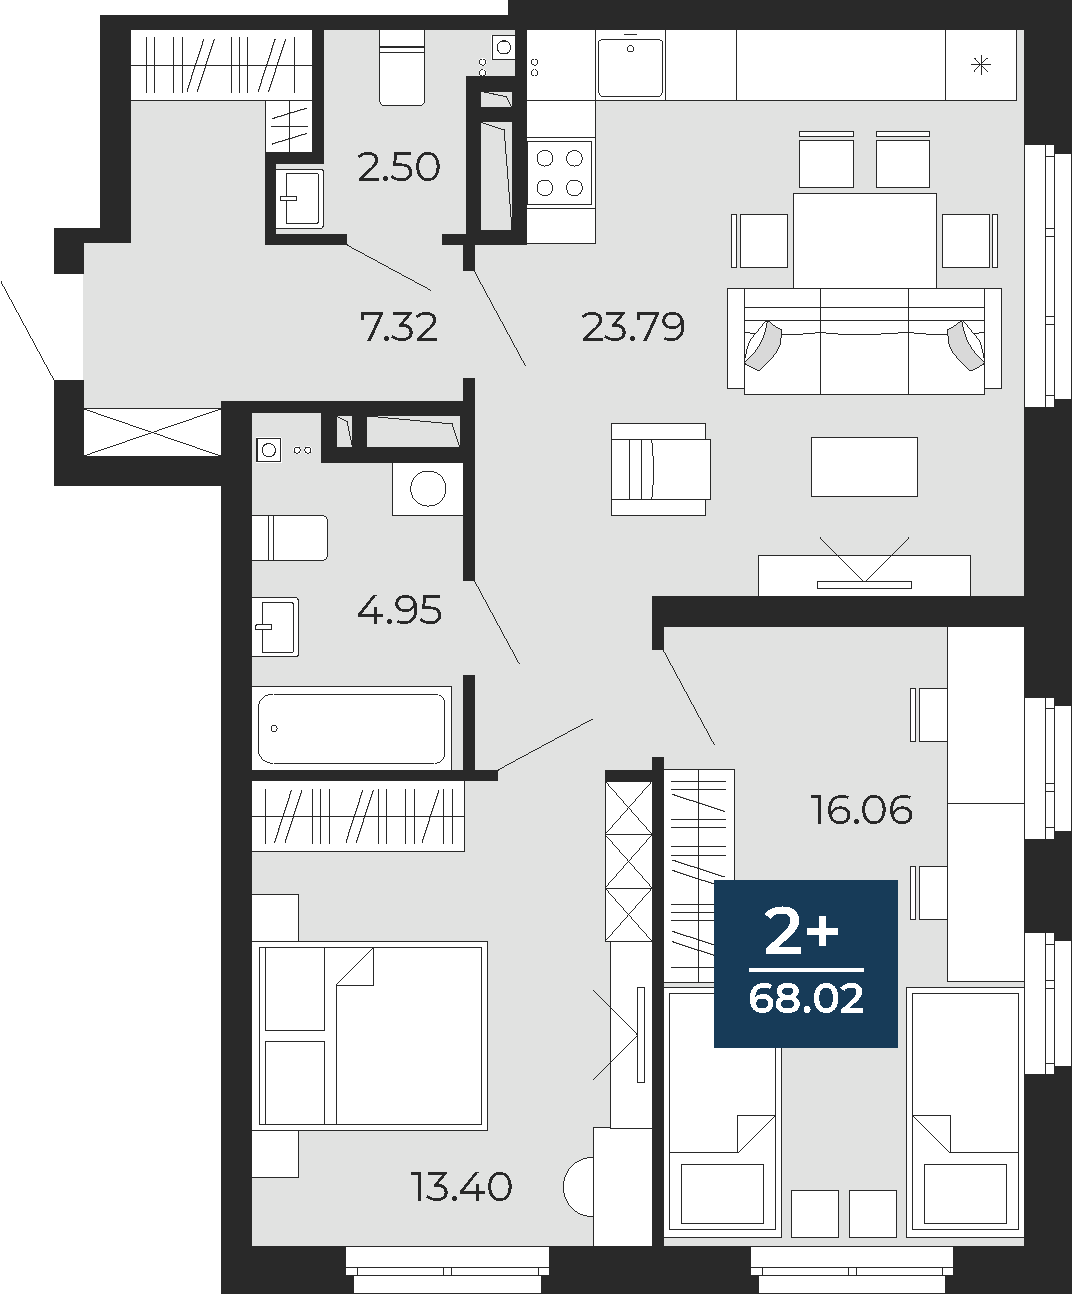 Квартира № 204, 2-комнатная, 68.02 кв. м, 16 этаж